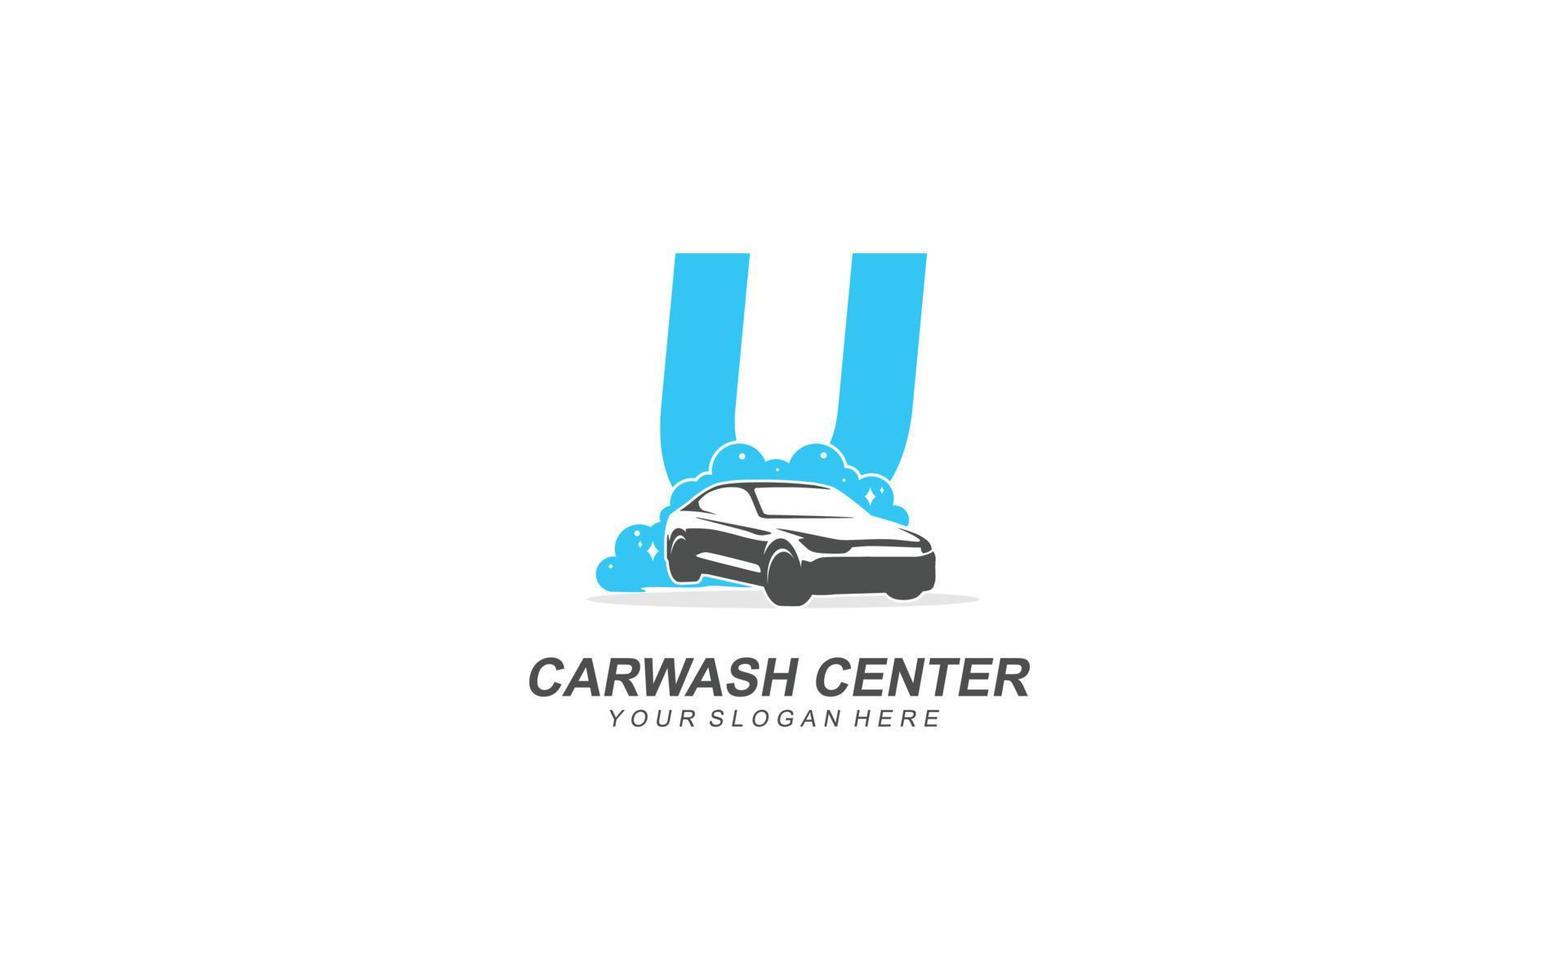 U Car wash logo design inspiration. Vector letter template design for brand.